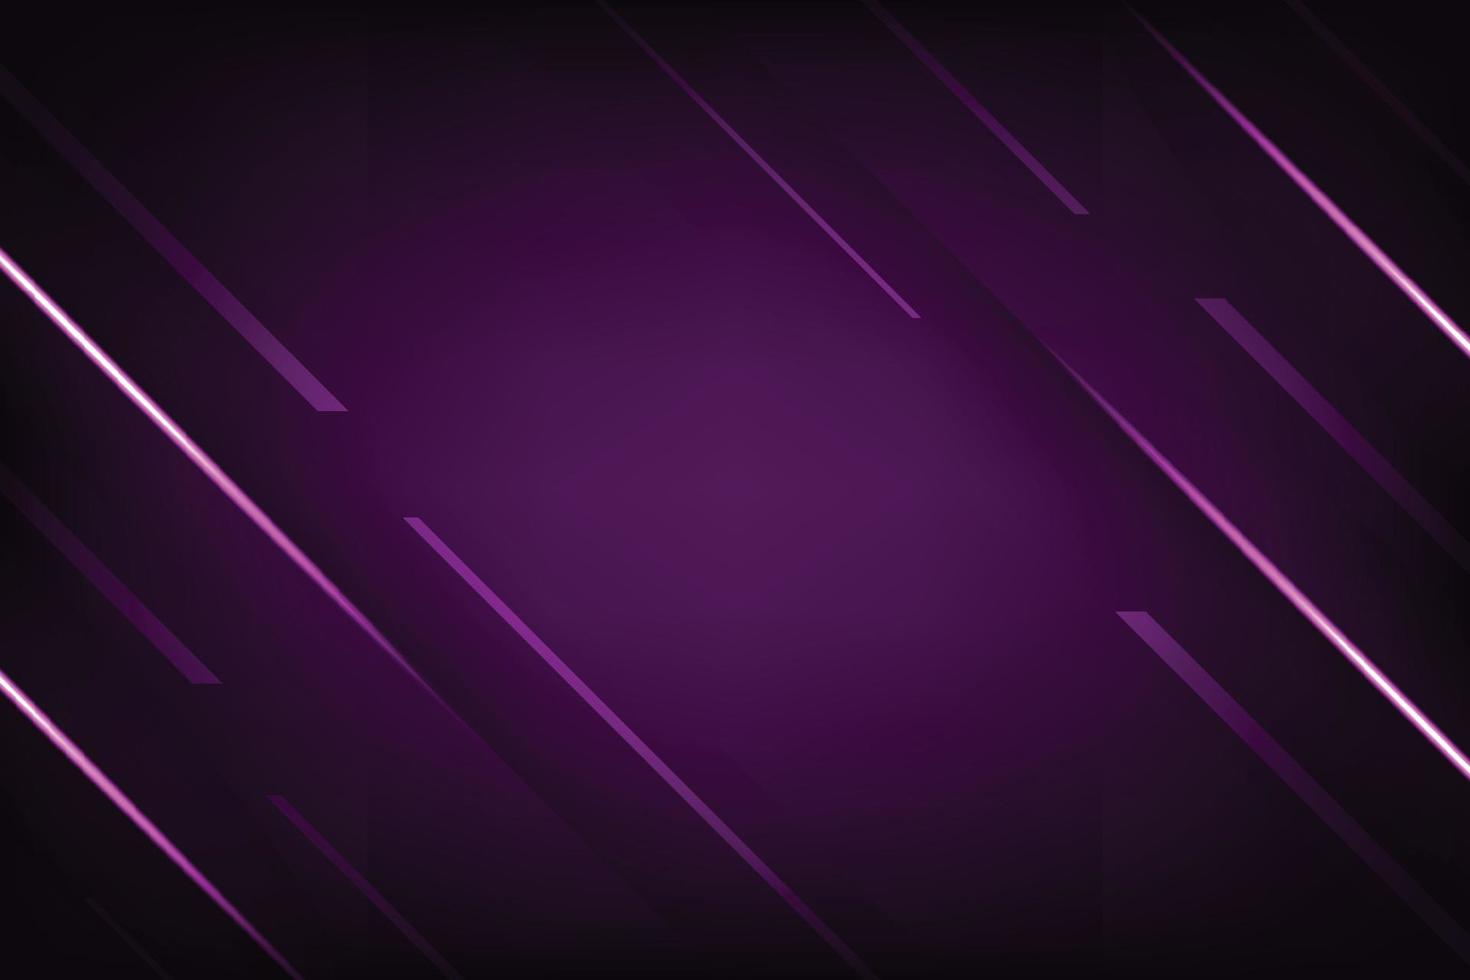 vector de fondo abstracto de luz púrpura.